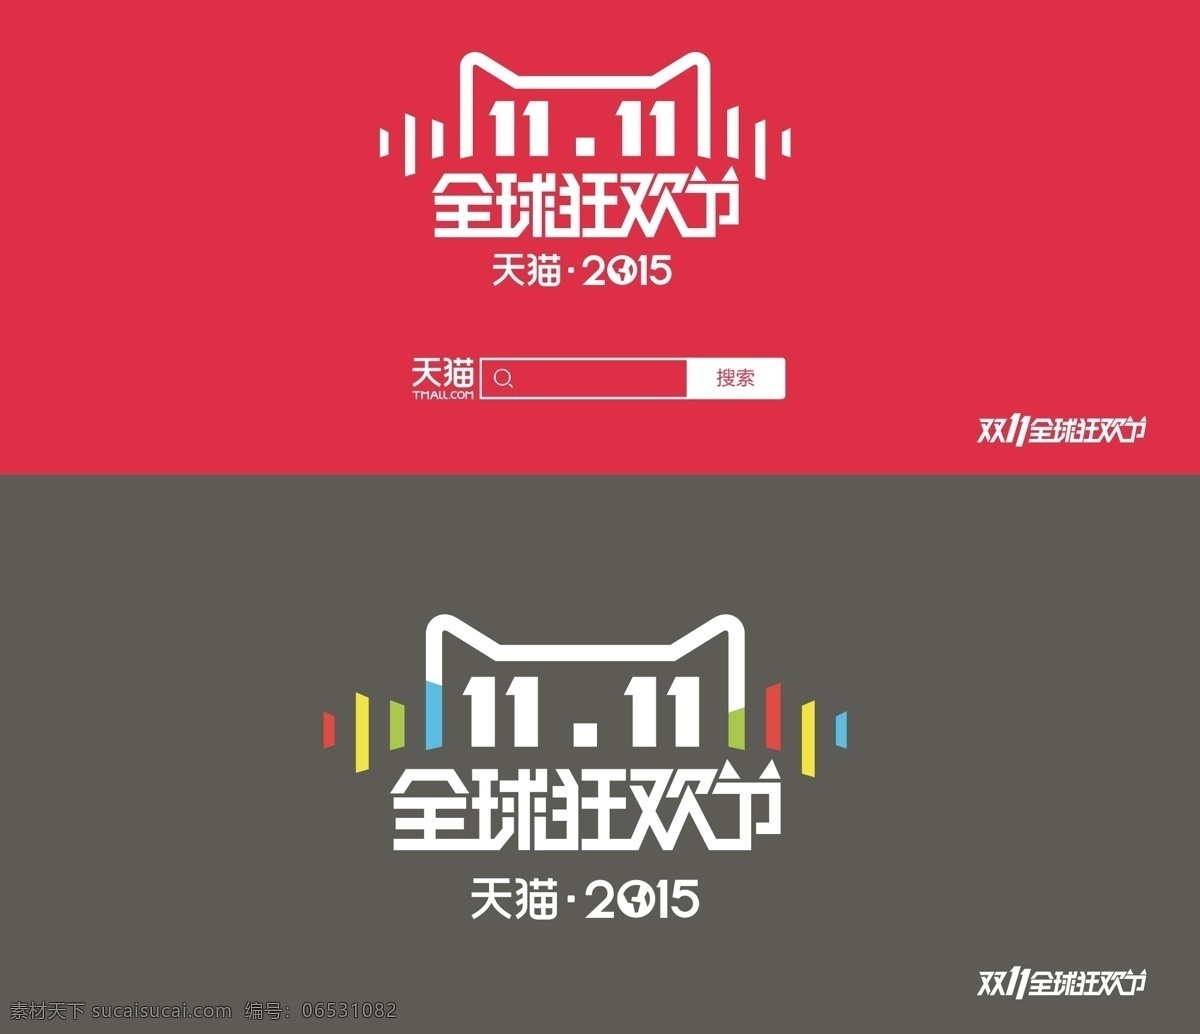 2015 天猫 双十 logo 全球 狂欢节 天猫2015 红色